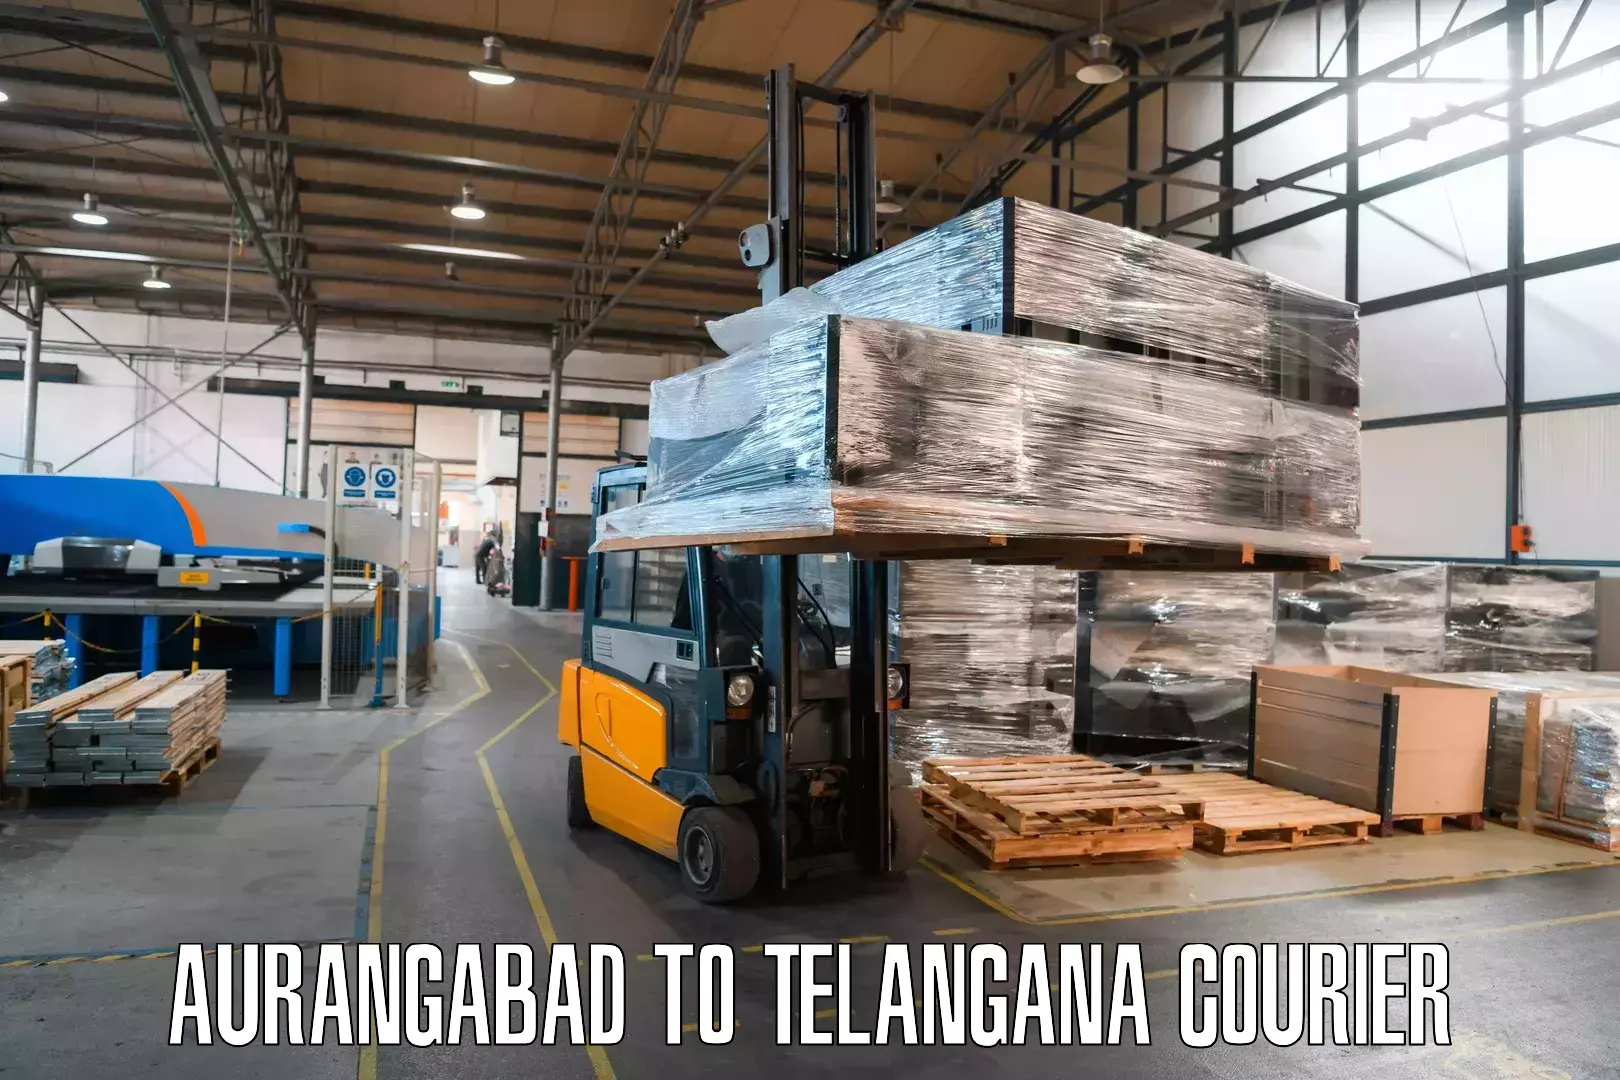 Courier service comparison Aurangabad to Achampet